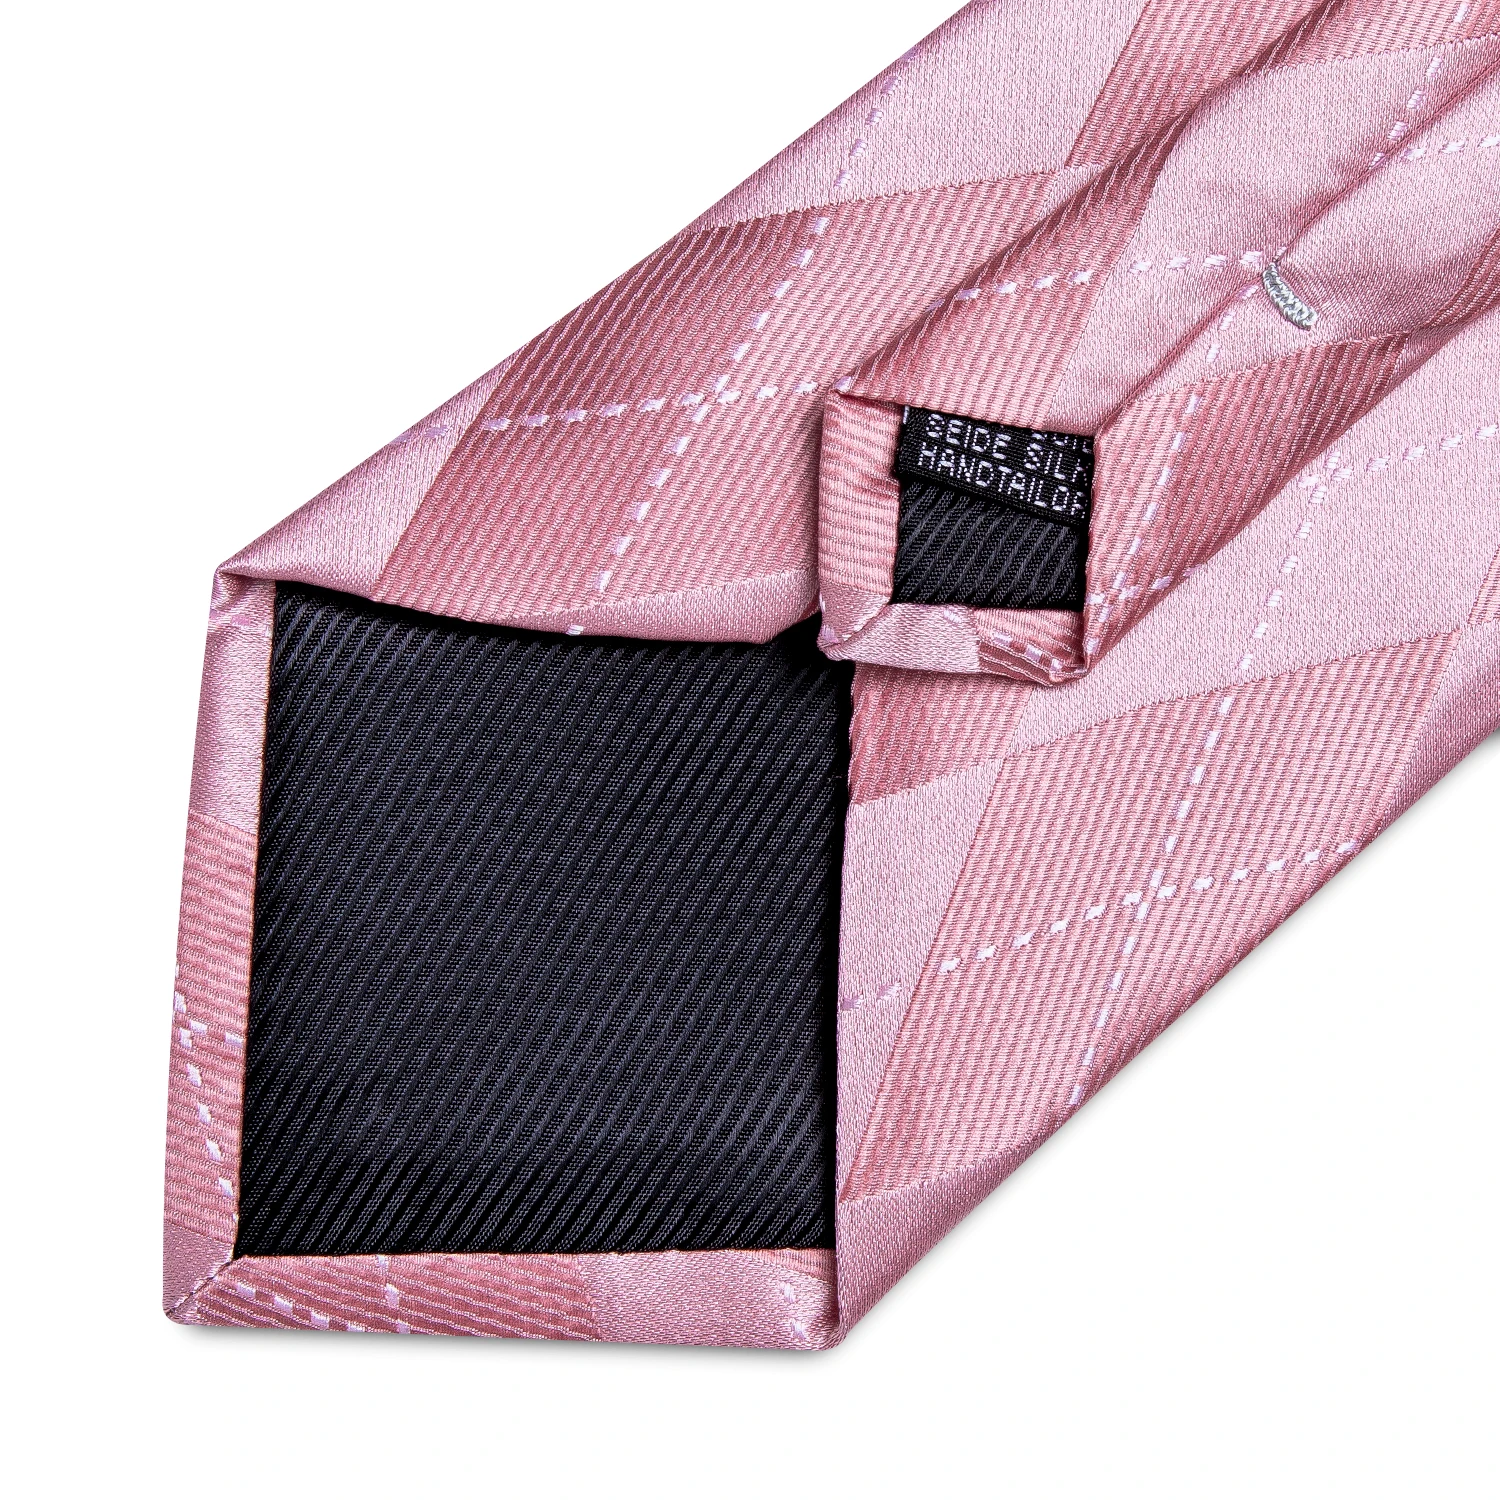 Lüks Tasarımcı Pembe Ekose ipek kravatlar Erkekler İçin 8cm İş Düğün Boyun Kravat Mendil Kol Düğmeleri Seti Hediye Erkekler İçin Toptan Görüntü 3